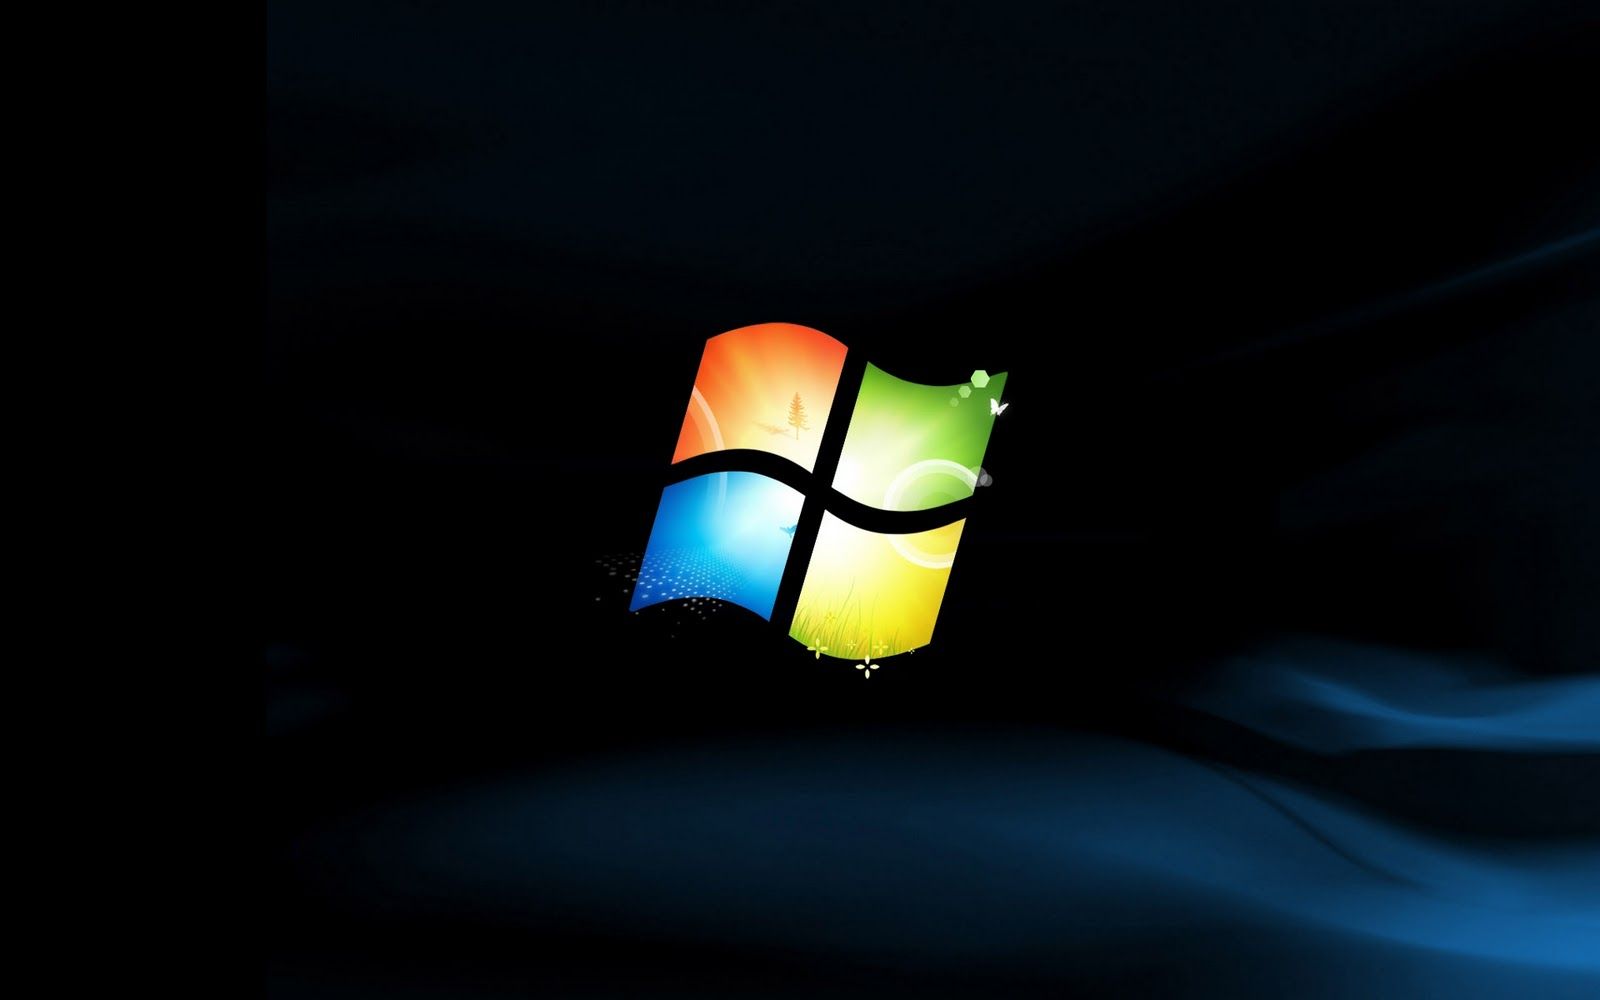 Trang trí cho desktop của bạn với hình nền Windows 7 Ultimate đẹp mắt và sống động. Hình nền này sẽ mang lại cho bạn không gian làm việc tràn đầy năng lượng tích cực và giúp tăng cường hiệu suất làm việc của bạn. Hãy nhấp vào hình ảnh để tải về và sử dụng ngay nhé!